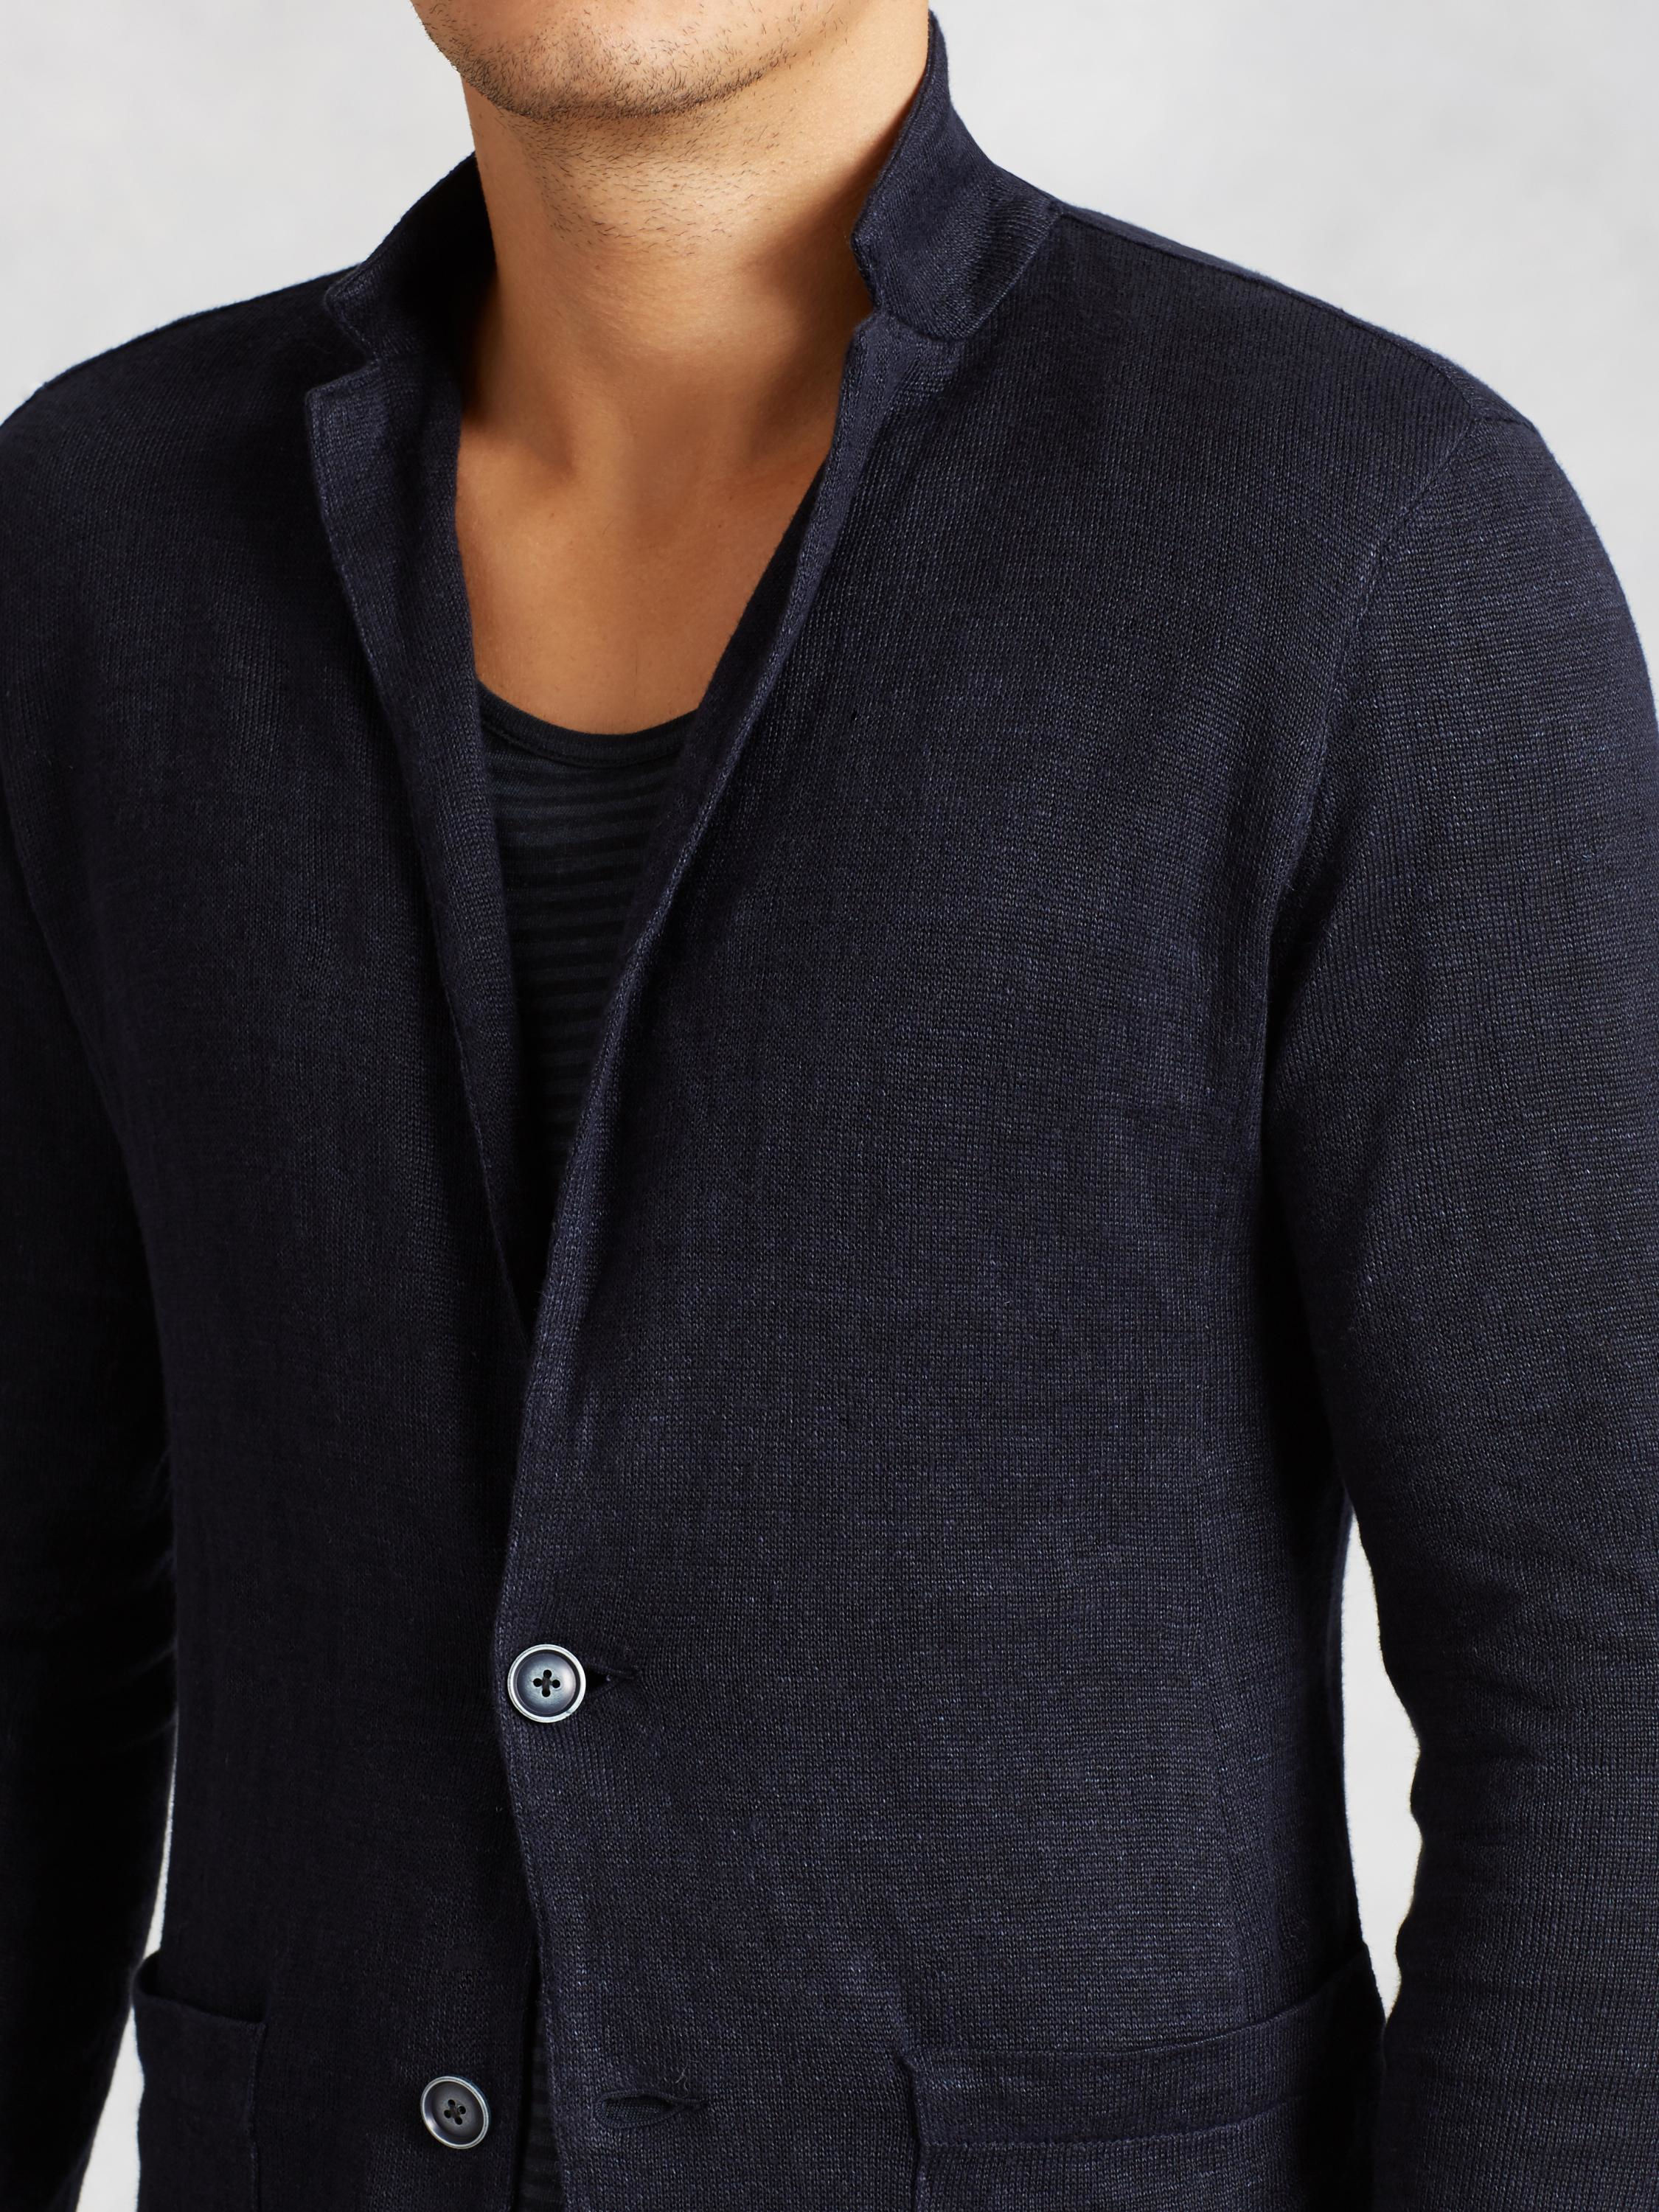 Lyst - John Varvatos Patch Pocket Sweater Blazer in Blue for Men